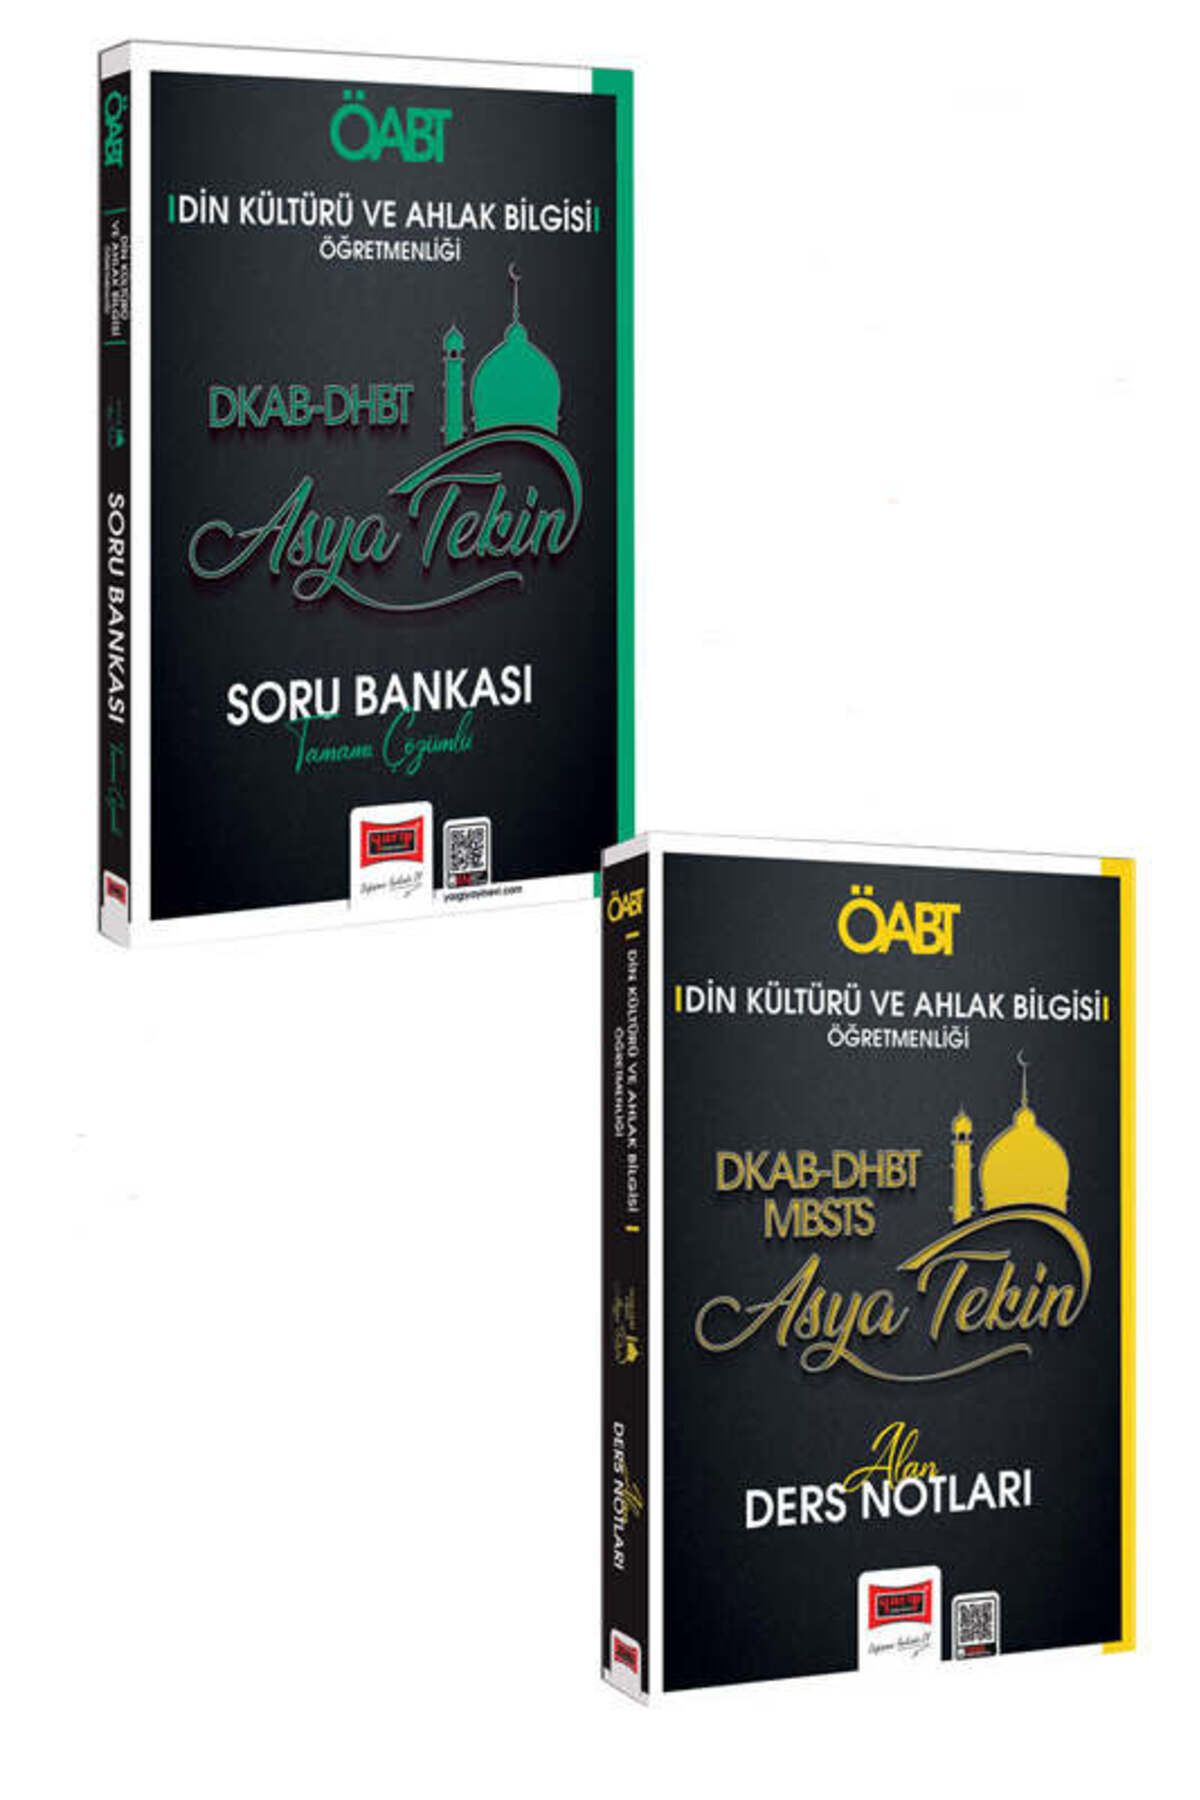 Yargı Yayınları ÖABT Din Kültürü Ahlak Bilgisi DHBT-DKAB-MBSTS Alan Ders Notları ve Tamamı Çözümlü Soru Bankası Seti